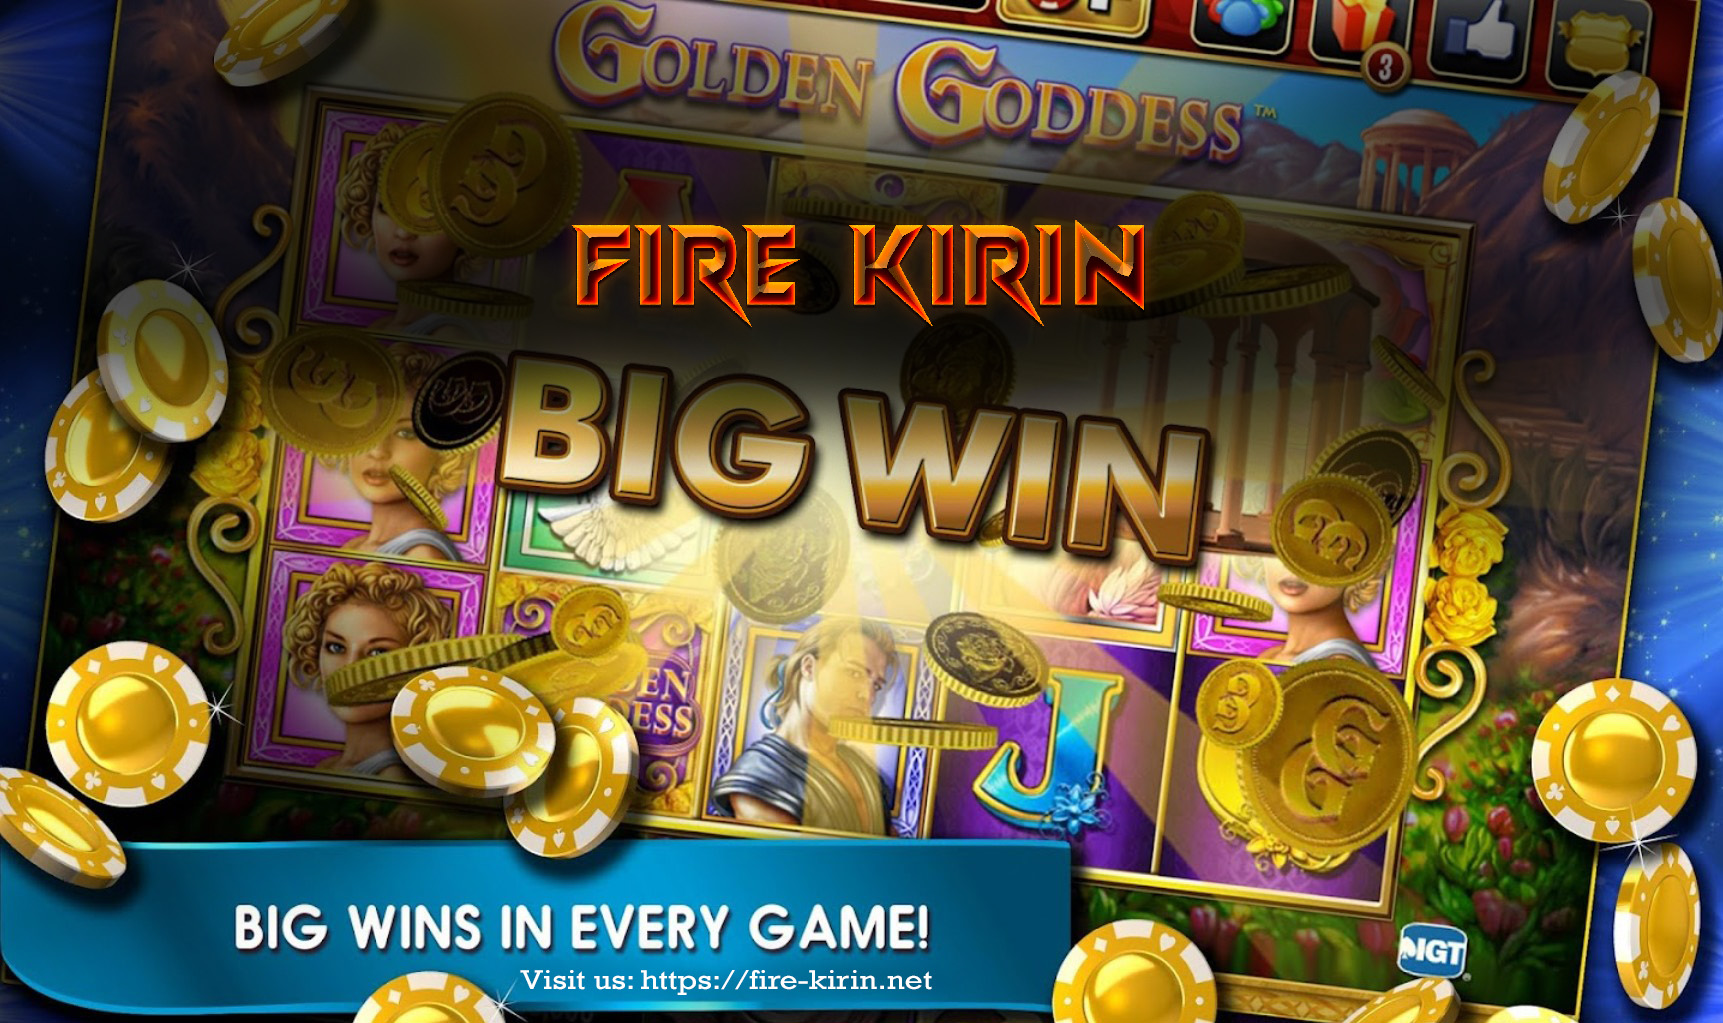 Play Fire Kirin Online